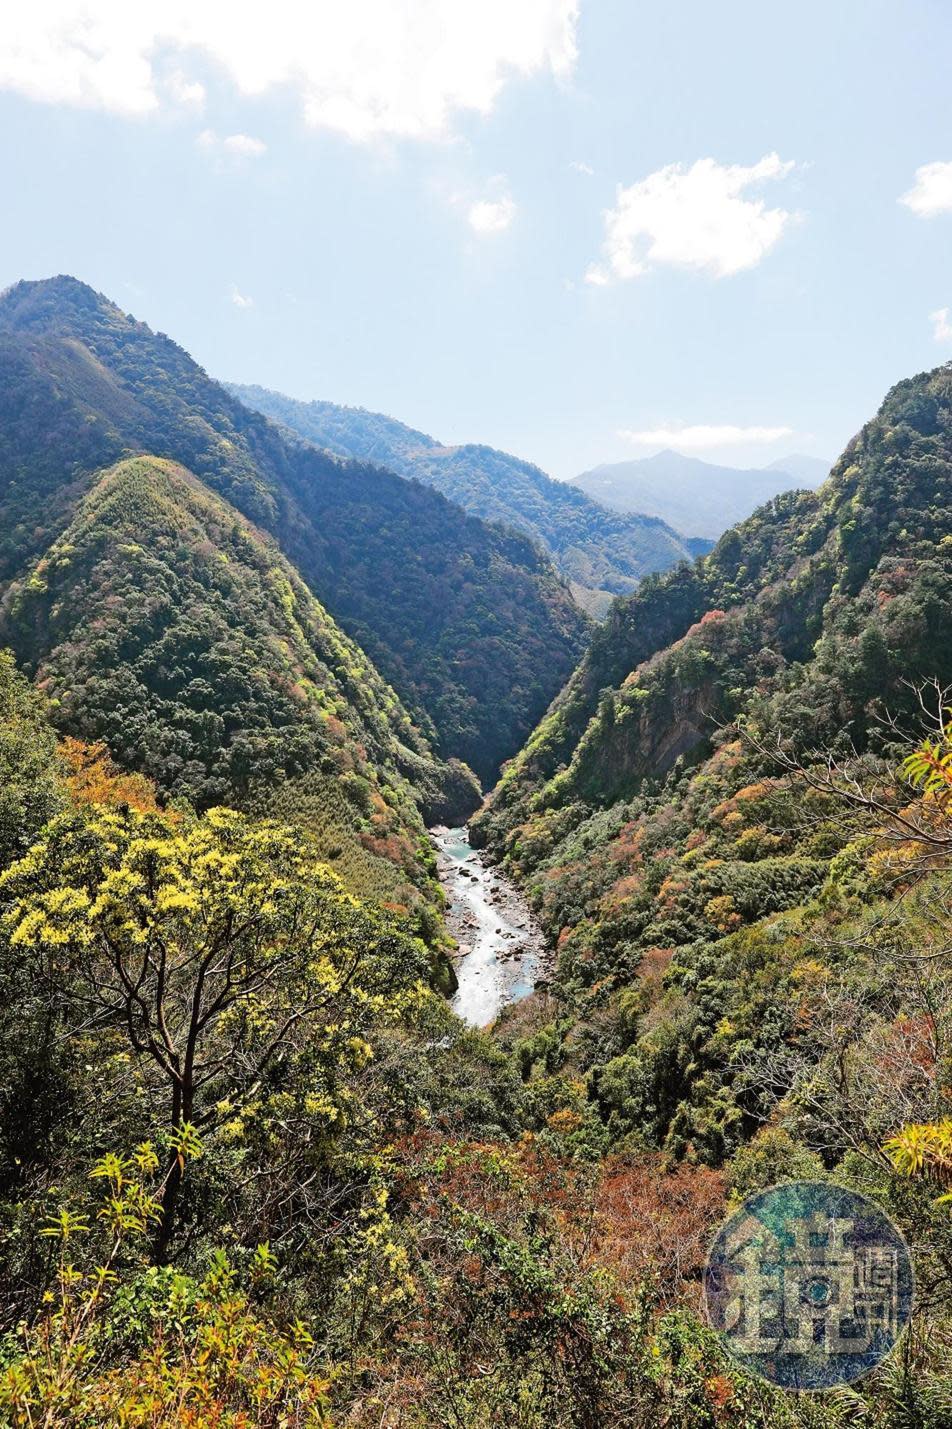 沿著縣道竹60-1而行，從高處眺望尖石後山的層層山巒與溪谷，景色壯闊迷人。